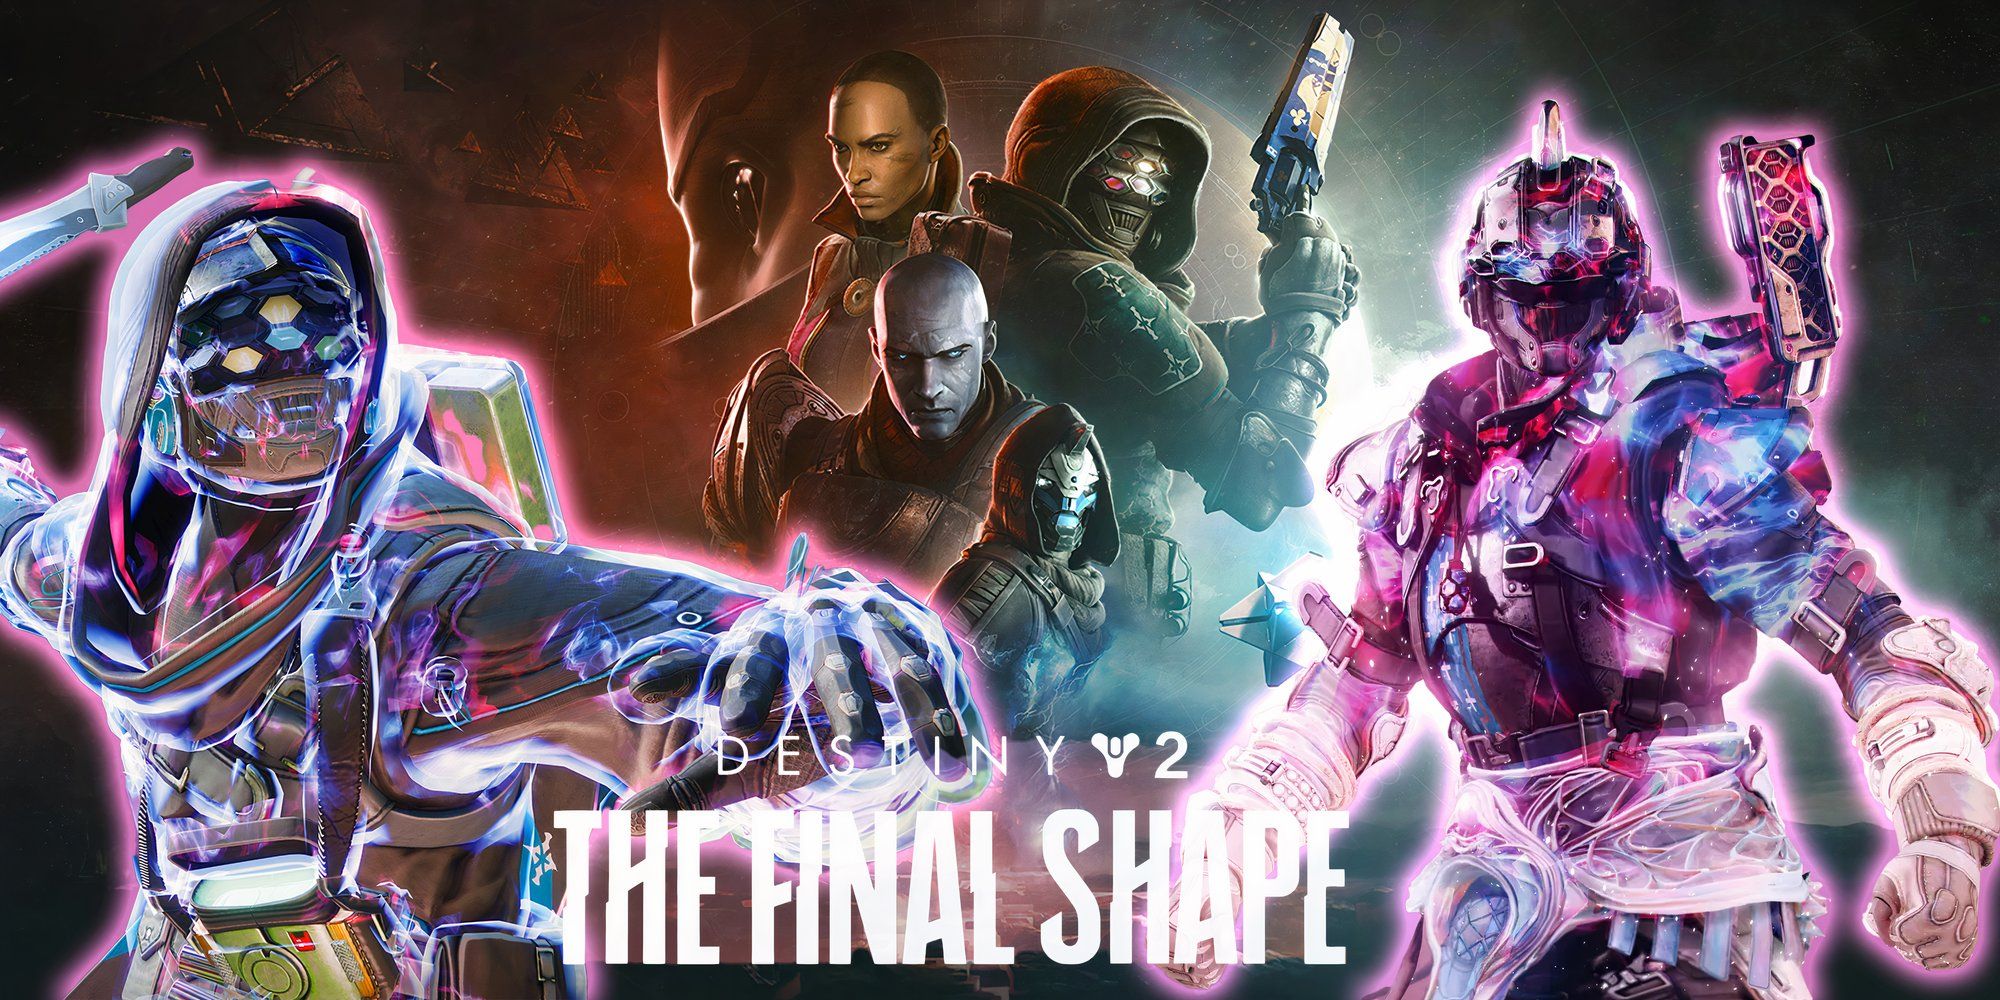 Destiny 2 The Final Shape unique feature image with logo